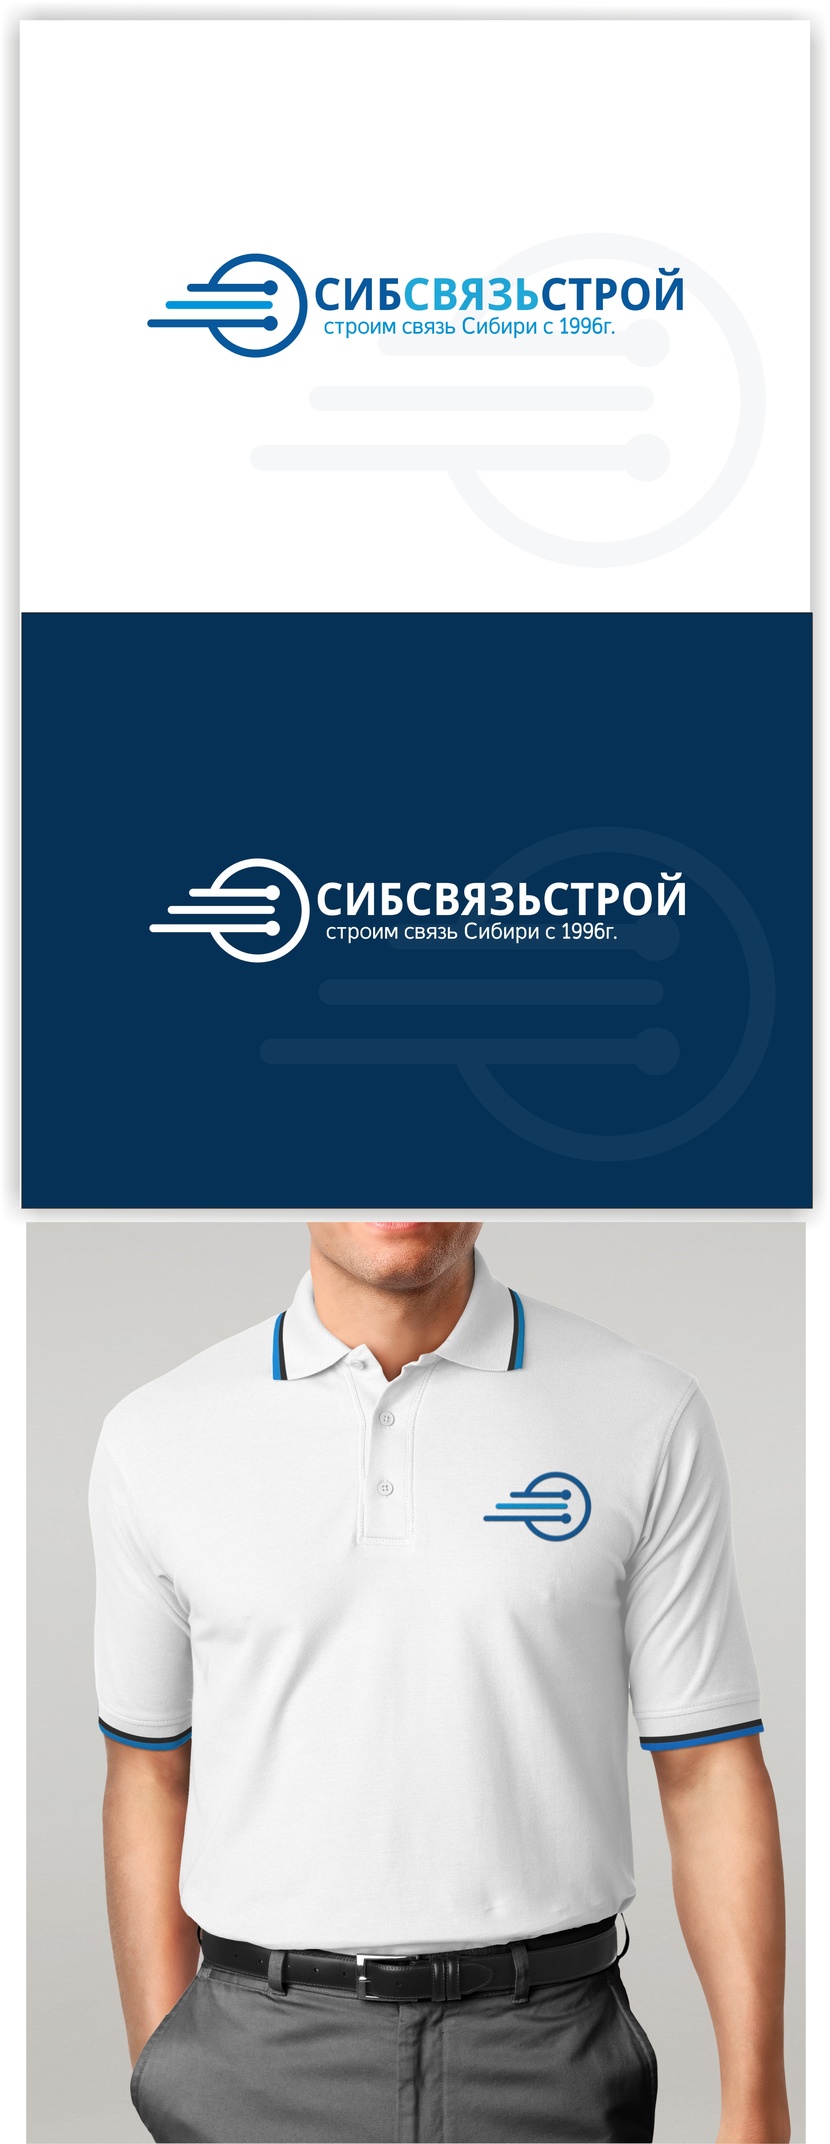 3 - Разработка или ребрендинг существующего логотипа компании Сибсвязьстрой